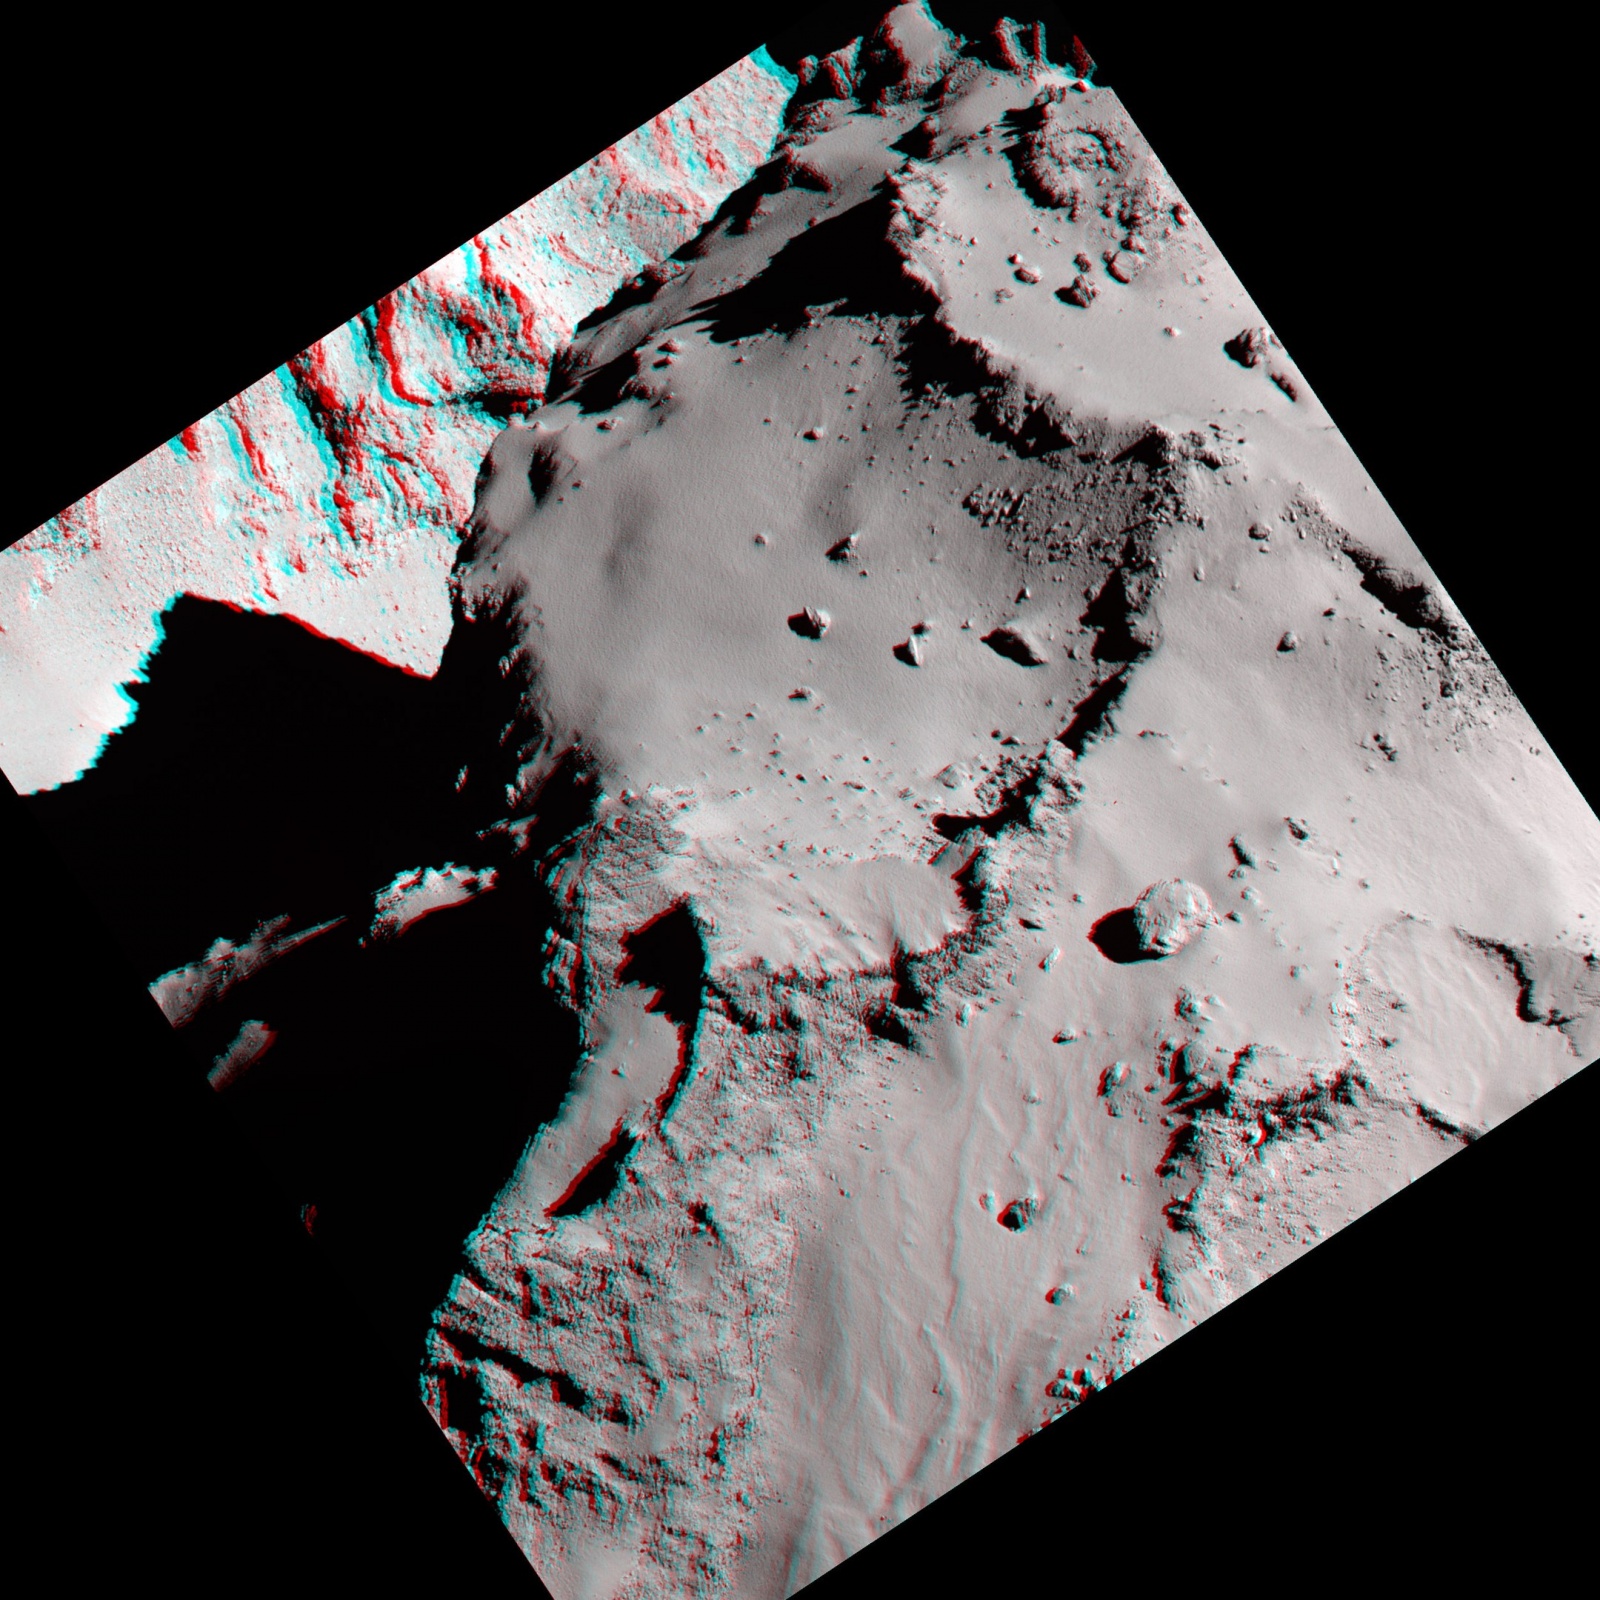 Космическое агентство ESA выложило в Сеть новые фотографии кометы Чурюмова-Герасименко - 6